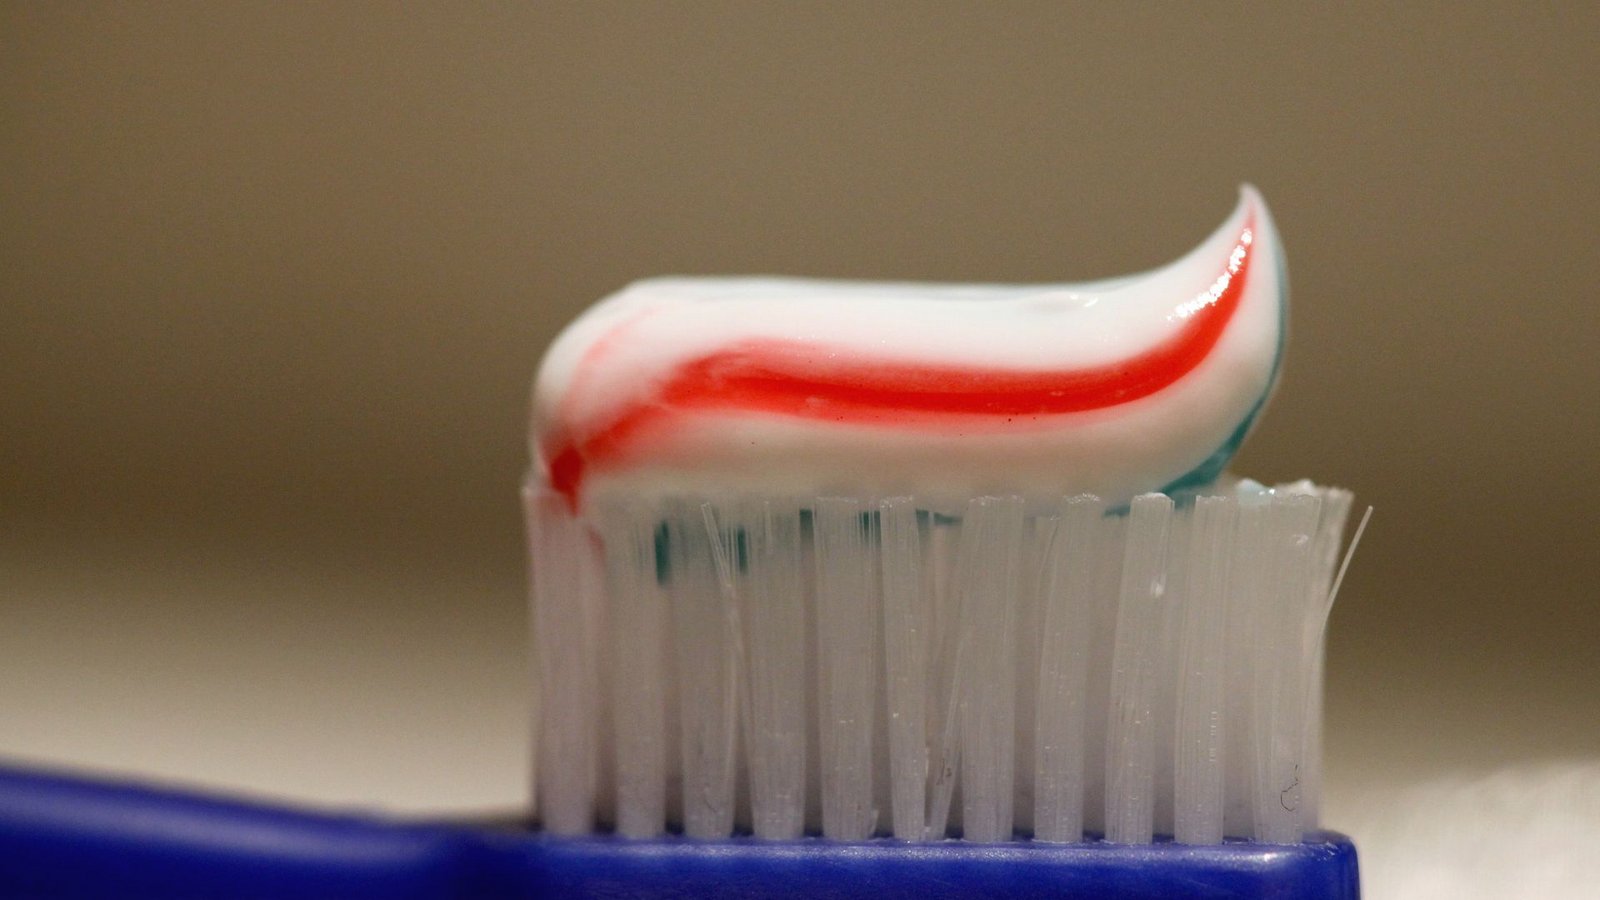 Viele Zahncremes sind bei der Untersuchung von  Öko-Test durchgefallen. (Symbolfoto)Foto: picture alliance / dpa/Daniel Karmann